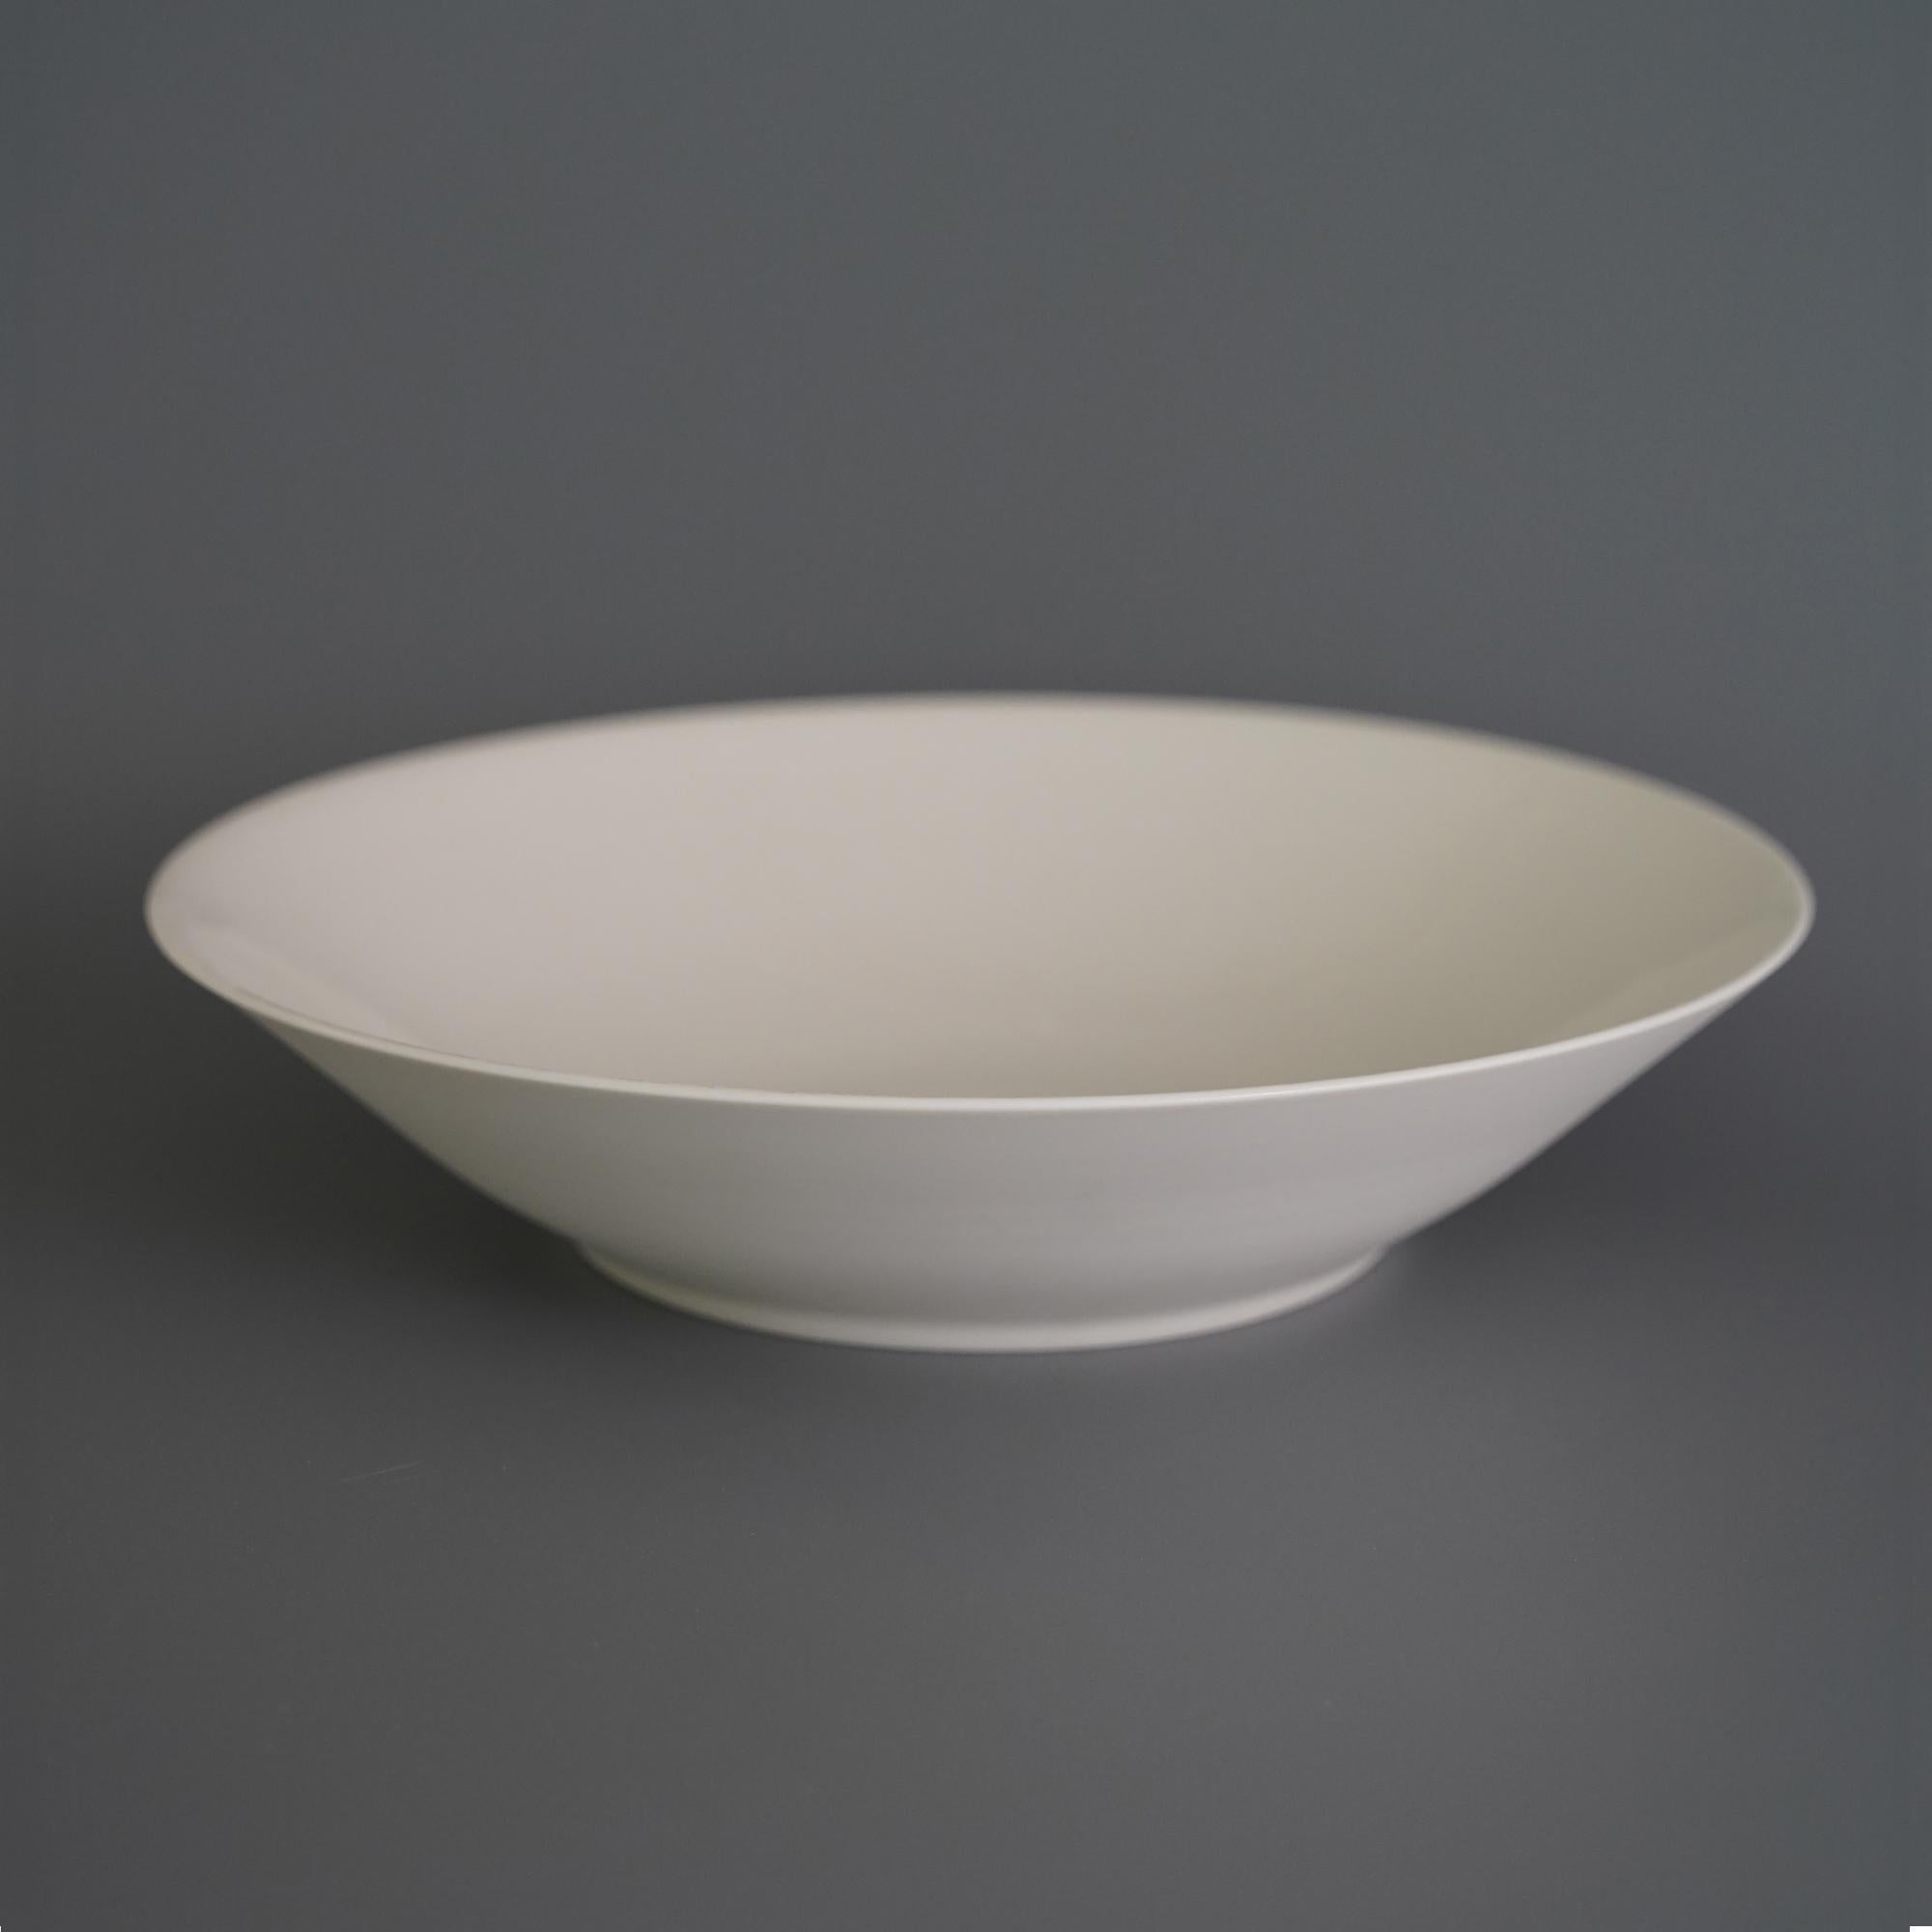 4 schlichte obstschalen von Studio Cúze
Abmessungen: B 29 x H 6,5 cm
MATERIALIEN: Keramik

Eine einzigartige Schale, die Ihren Raum erhellt und Ihr Obst auf unnachahmliche Weise zu präsentieren weiß. Die Schale ist komplett weiß und hat eine